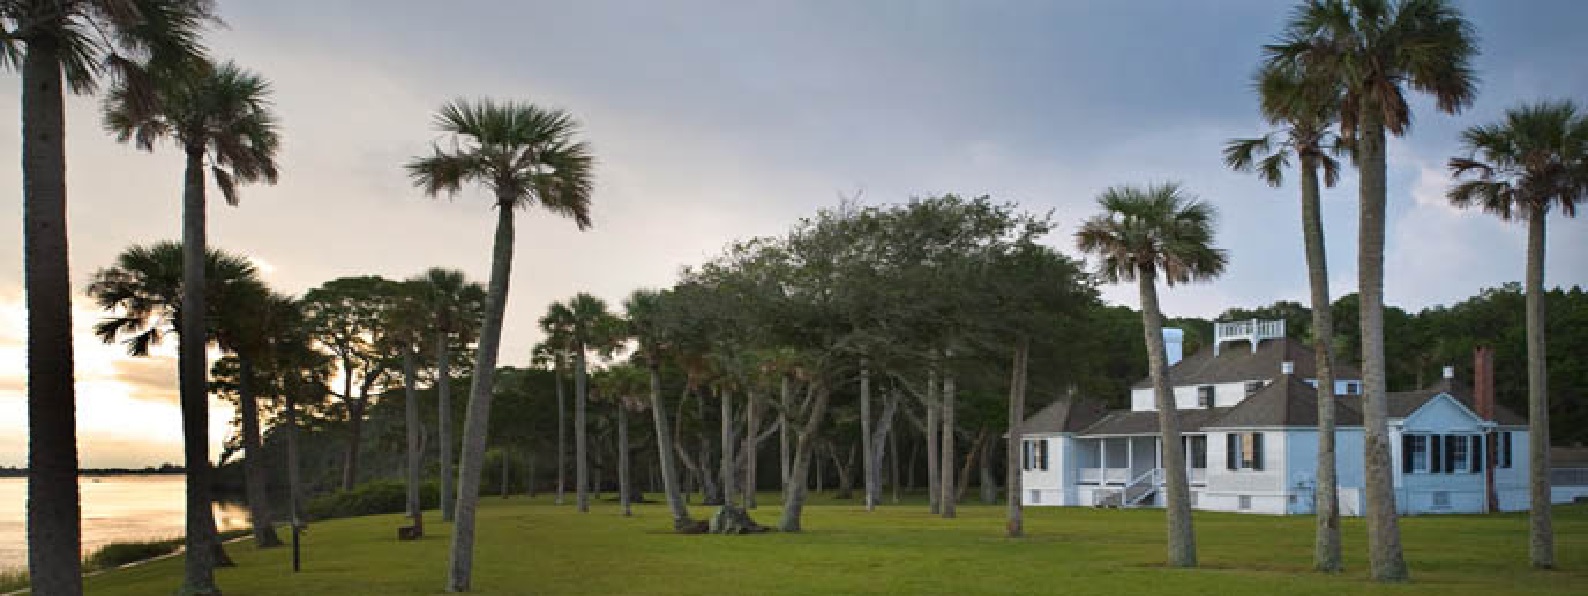 Kingsley Plantation in Jacksonville Florida